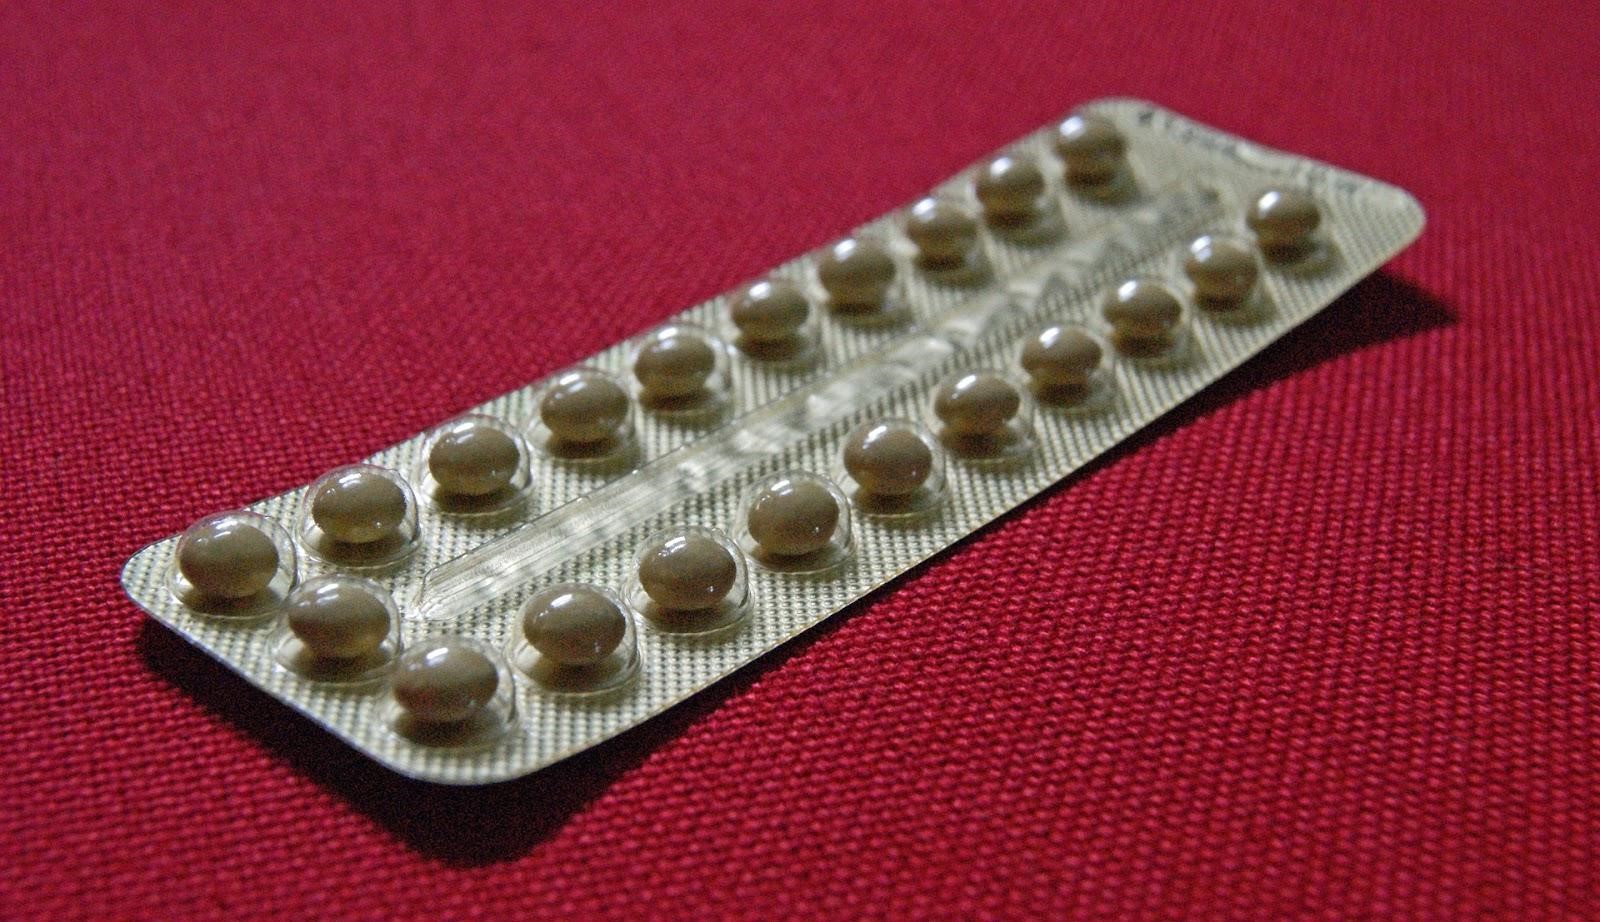 contraceptive pill 01